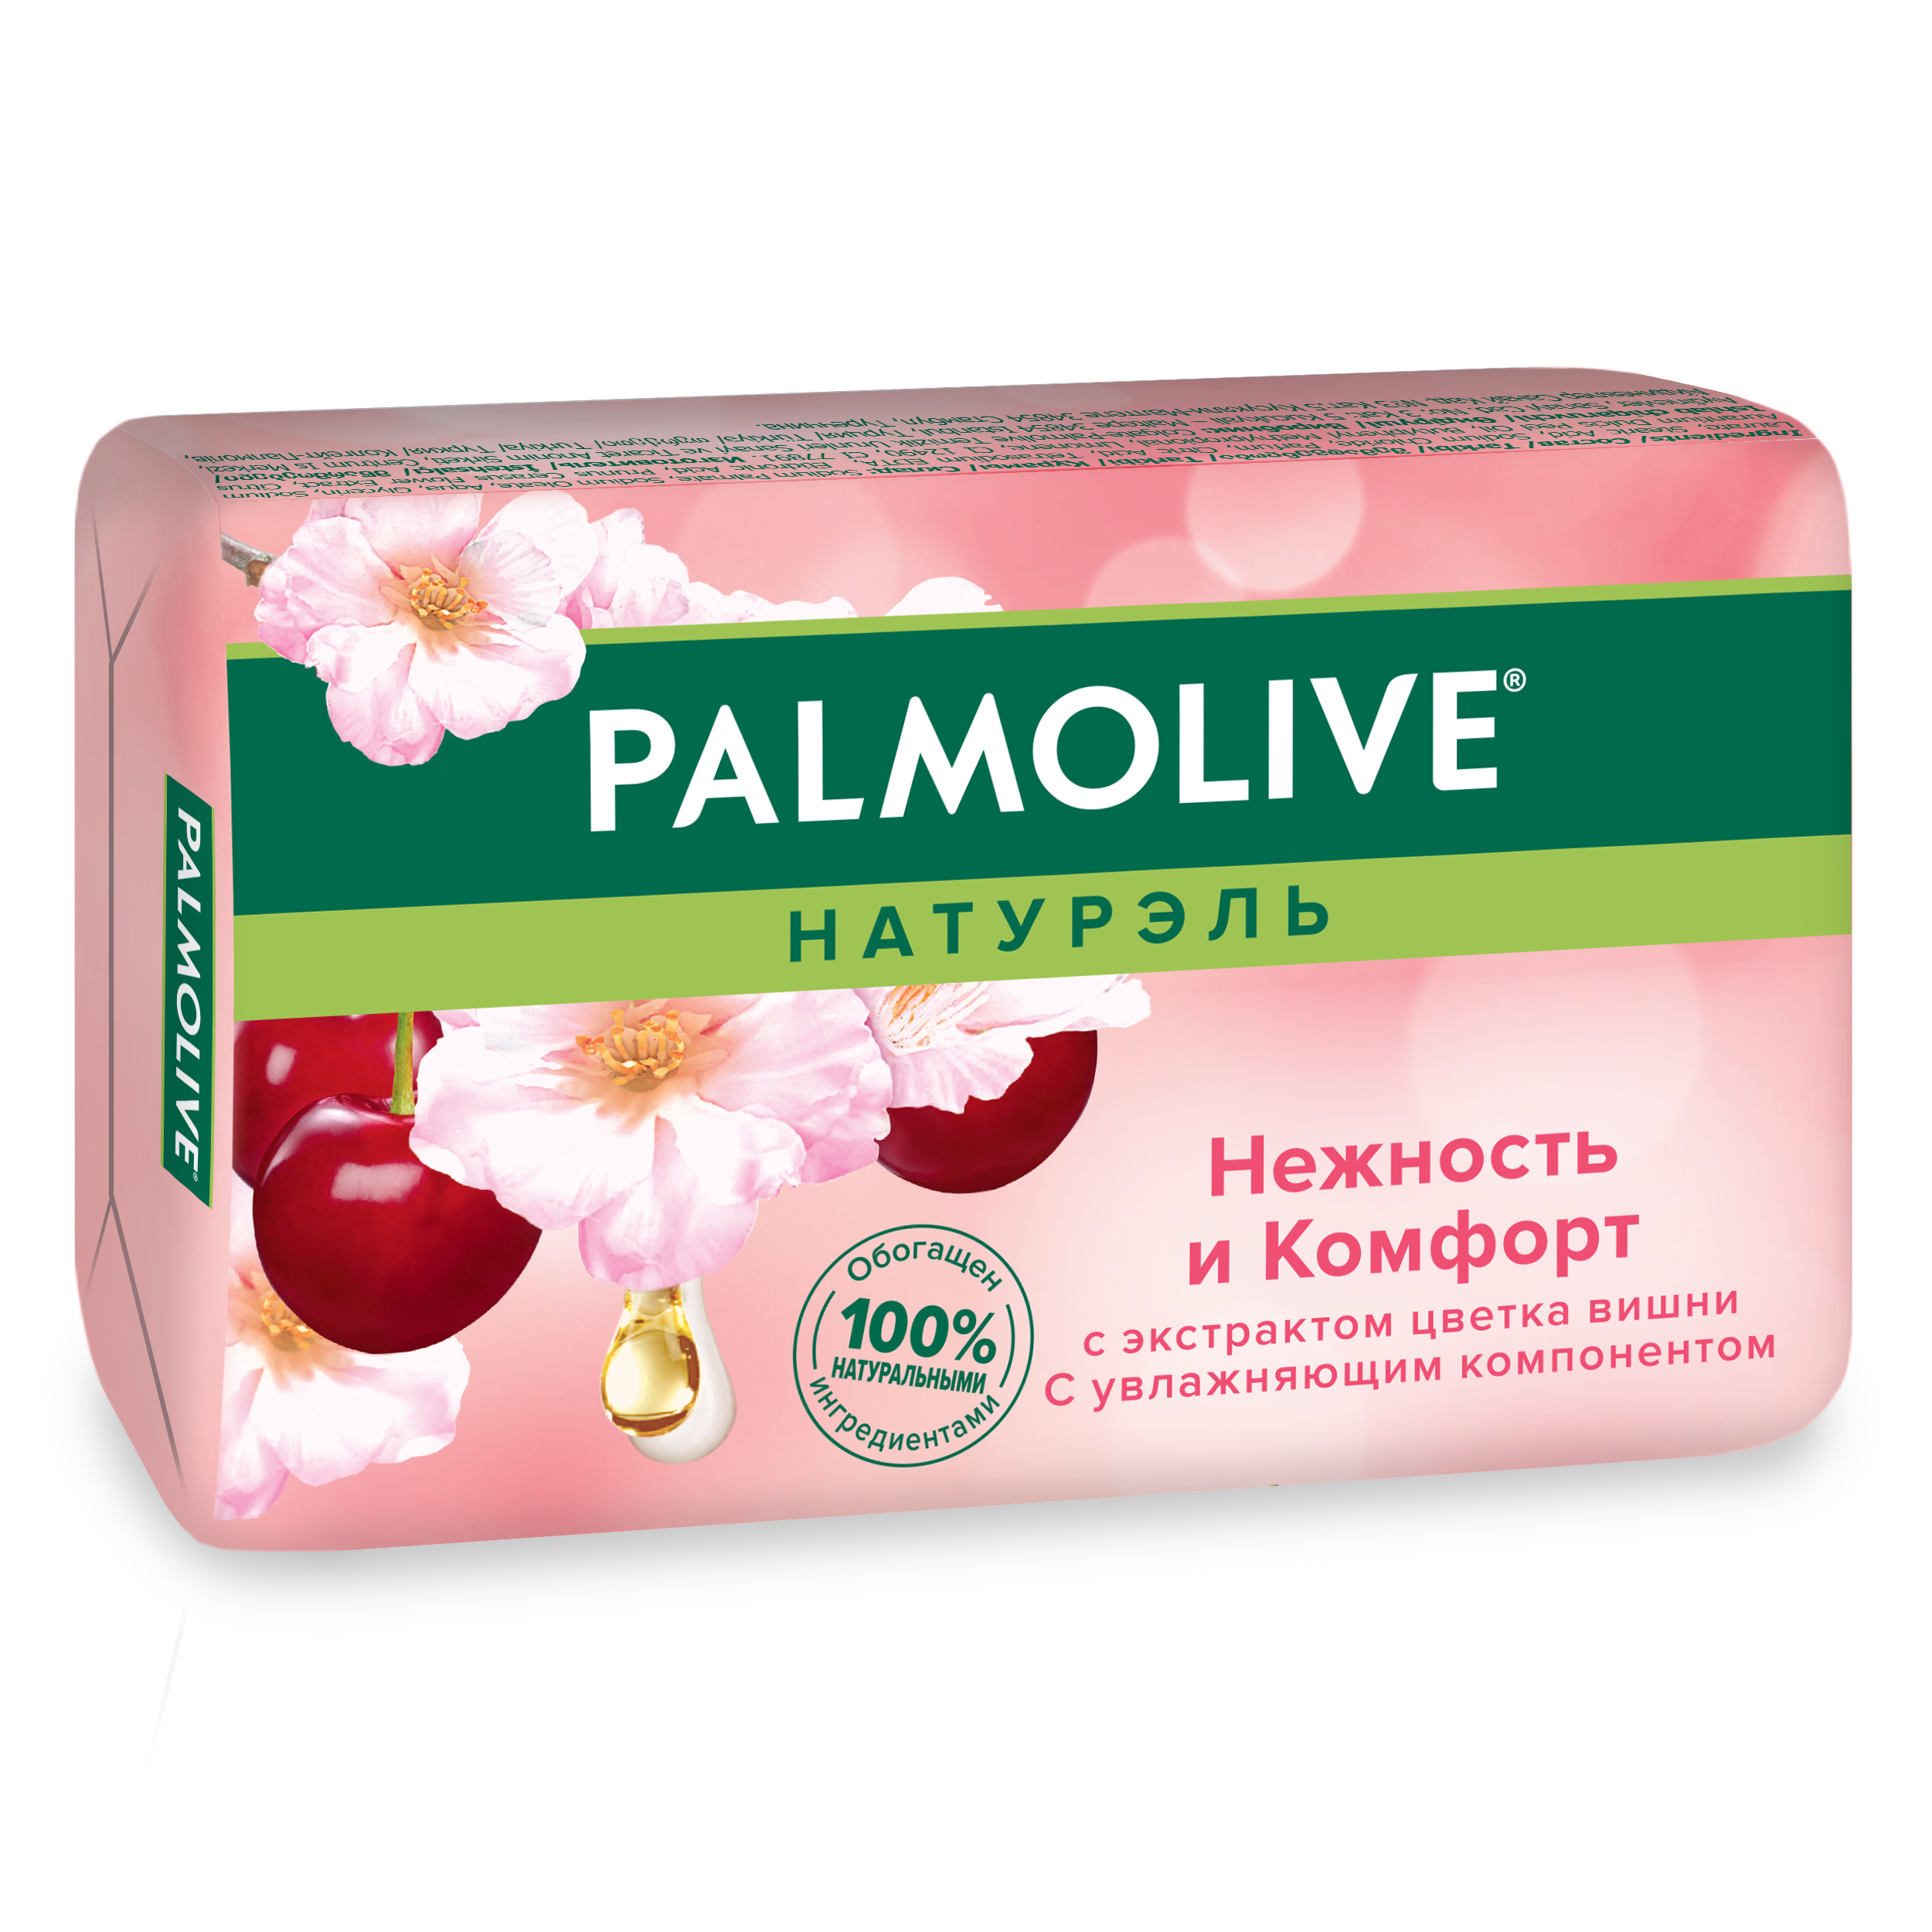 Косметическое мыло Palmolive Натурэль Нежность и комфорт Цветок вишни 90 г мыло palmolive нежность и комфорт ок вишни 6 шт 90 г